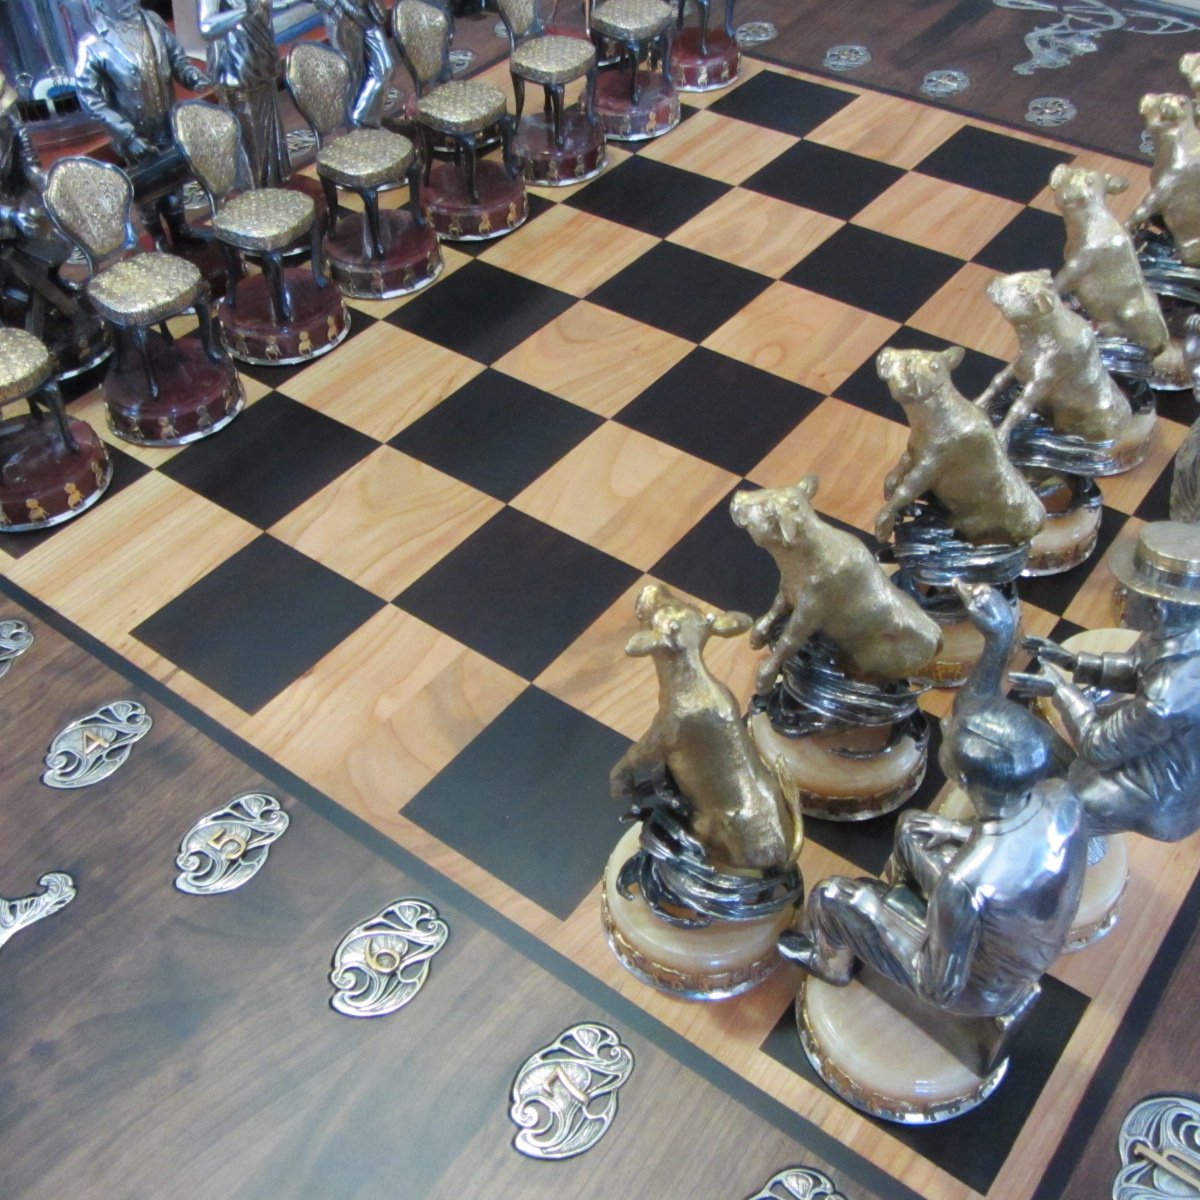 Подарочные шахматы "Бендер против Бендера" - Шахматная доска из натурального дерева